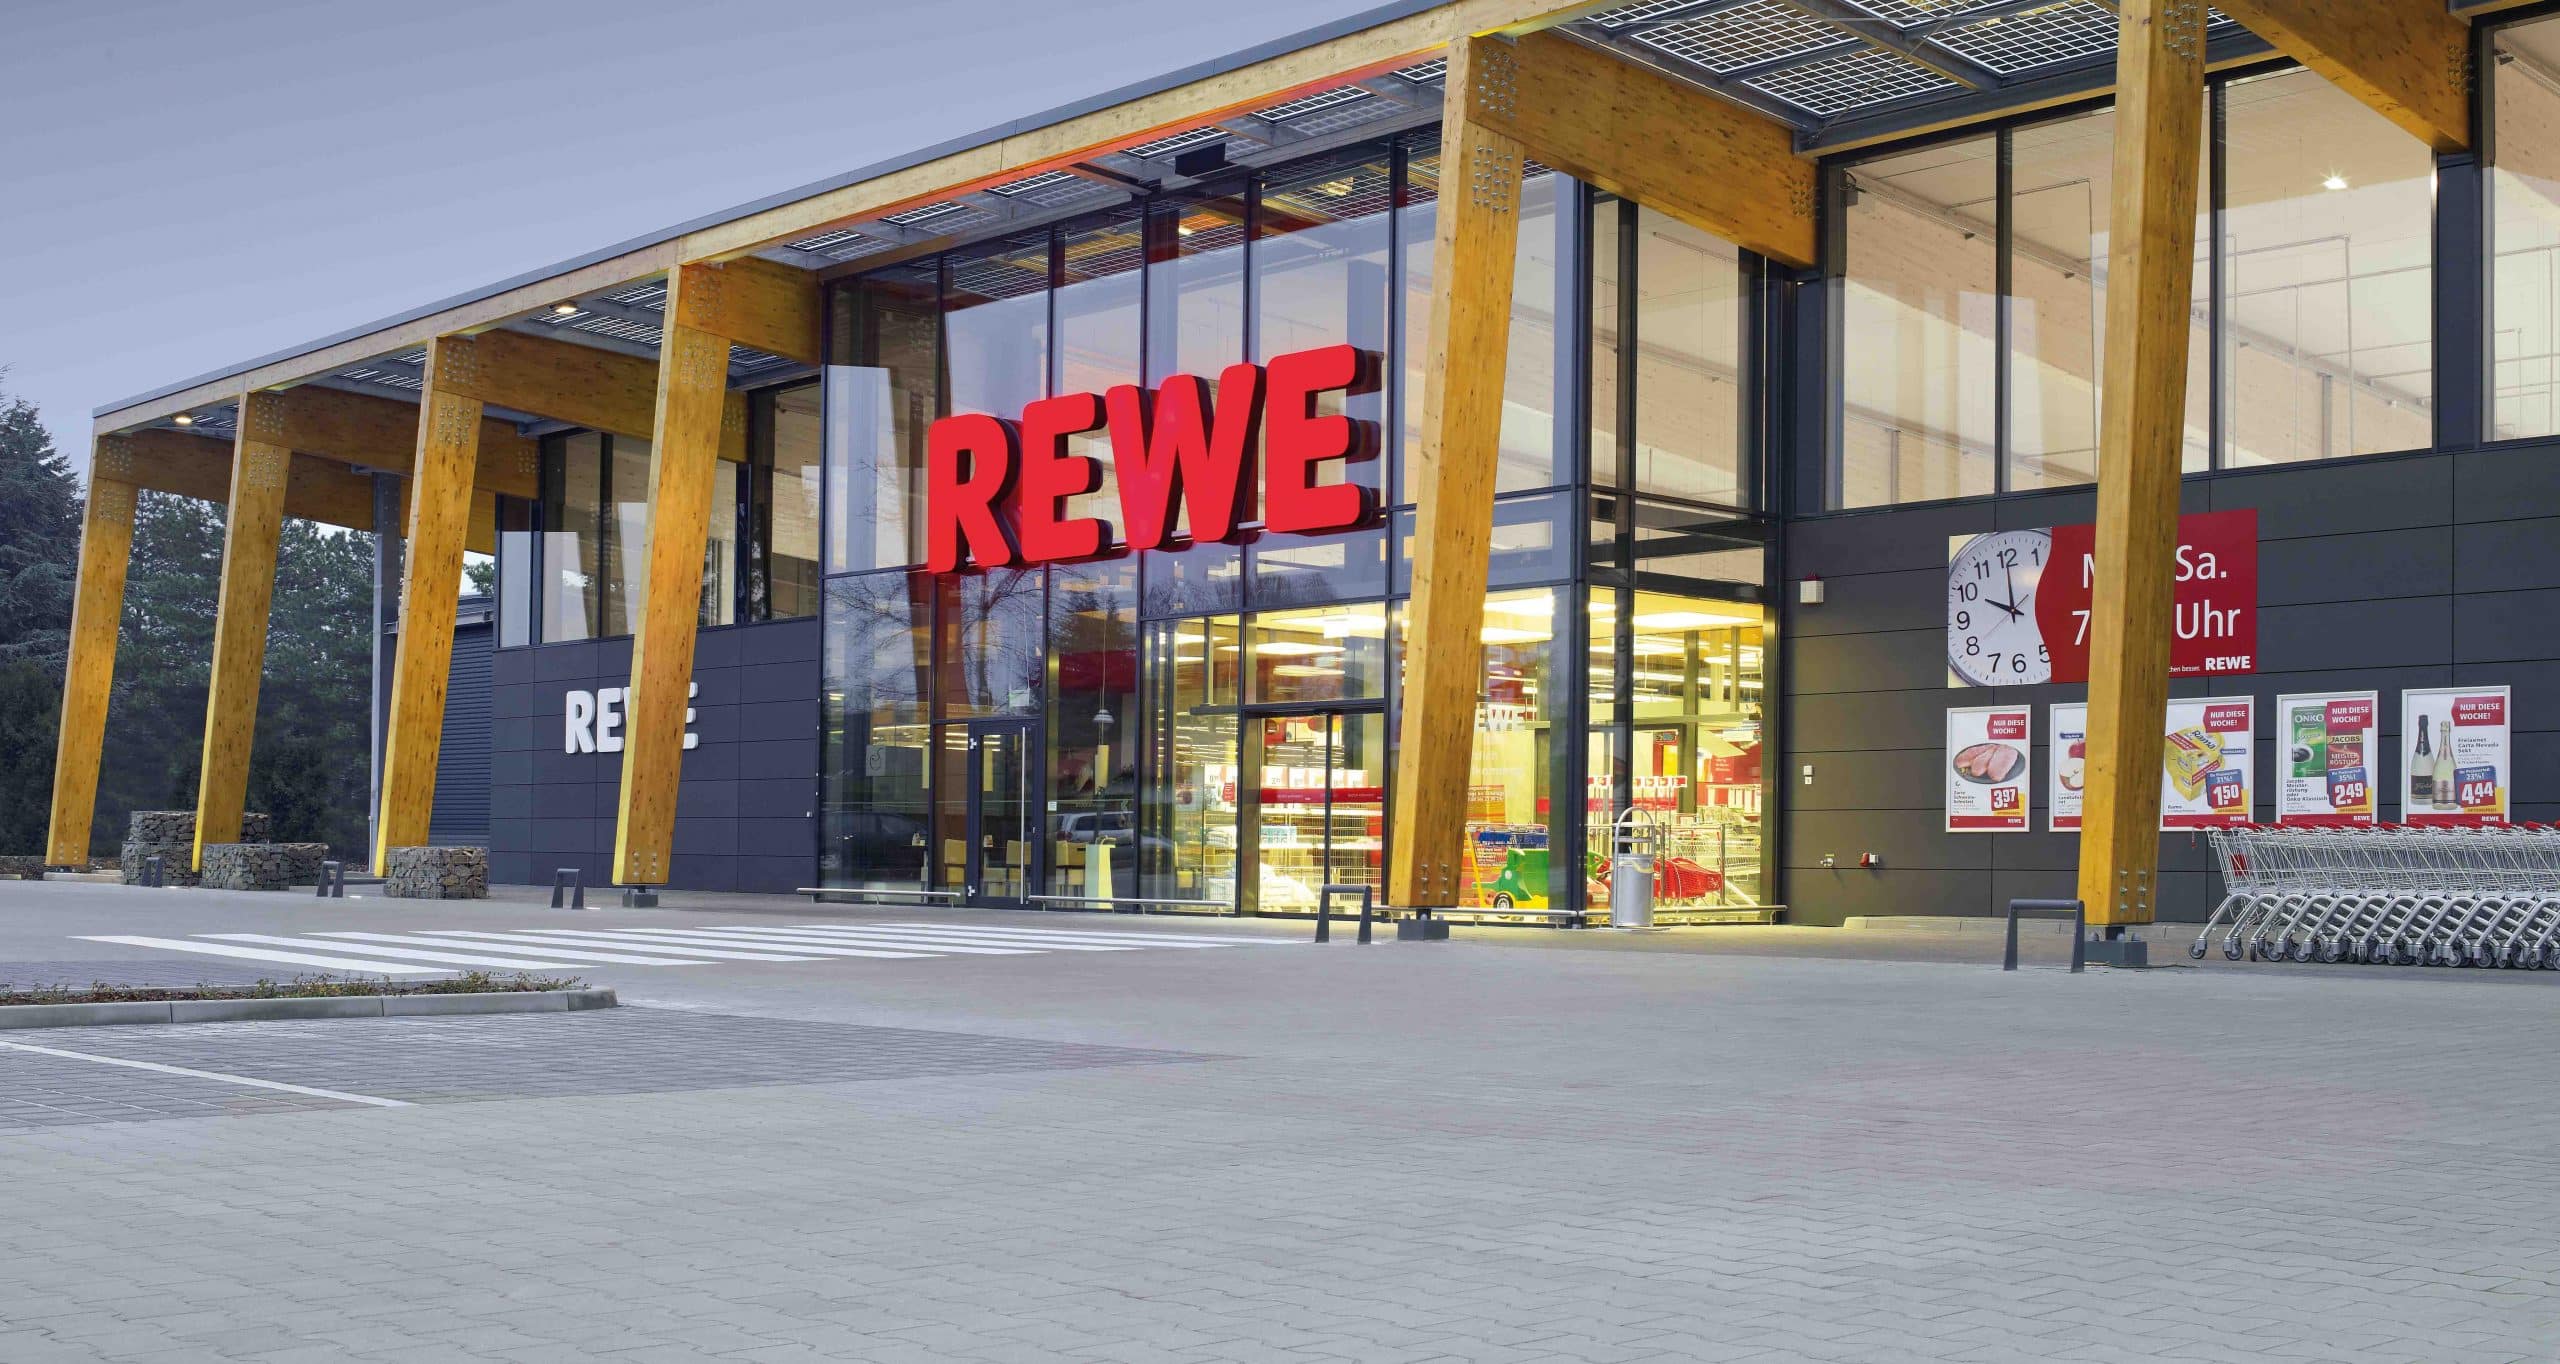 REWE Markt Außenansicht als Symbolbild für unsere Expansion bei REWE